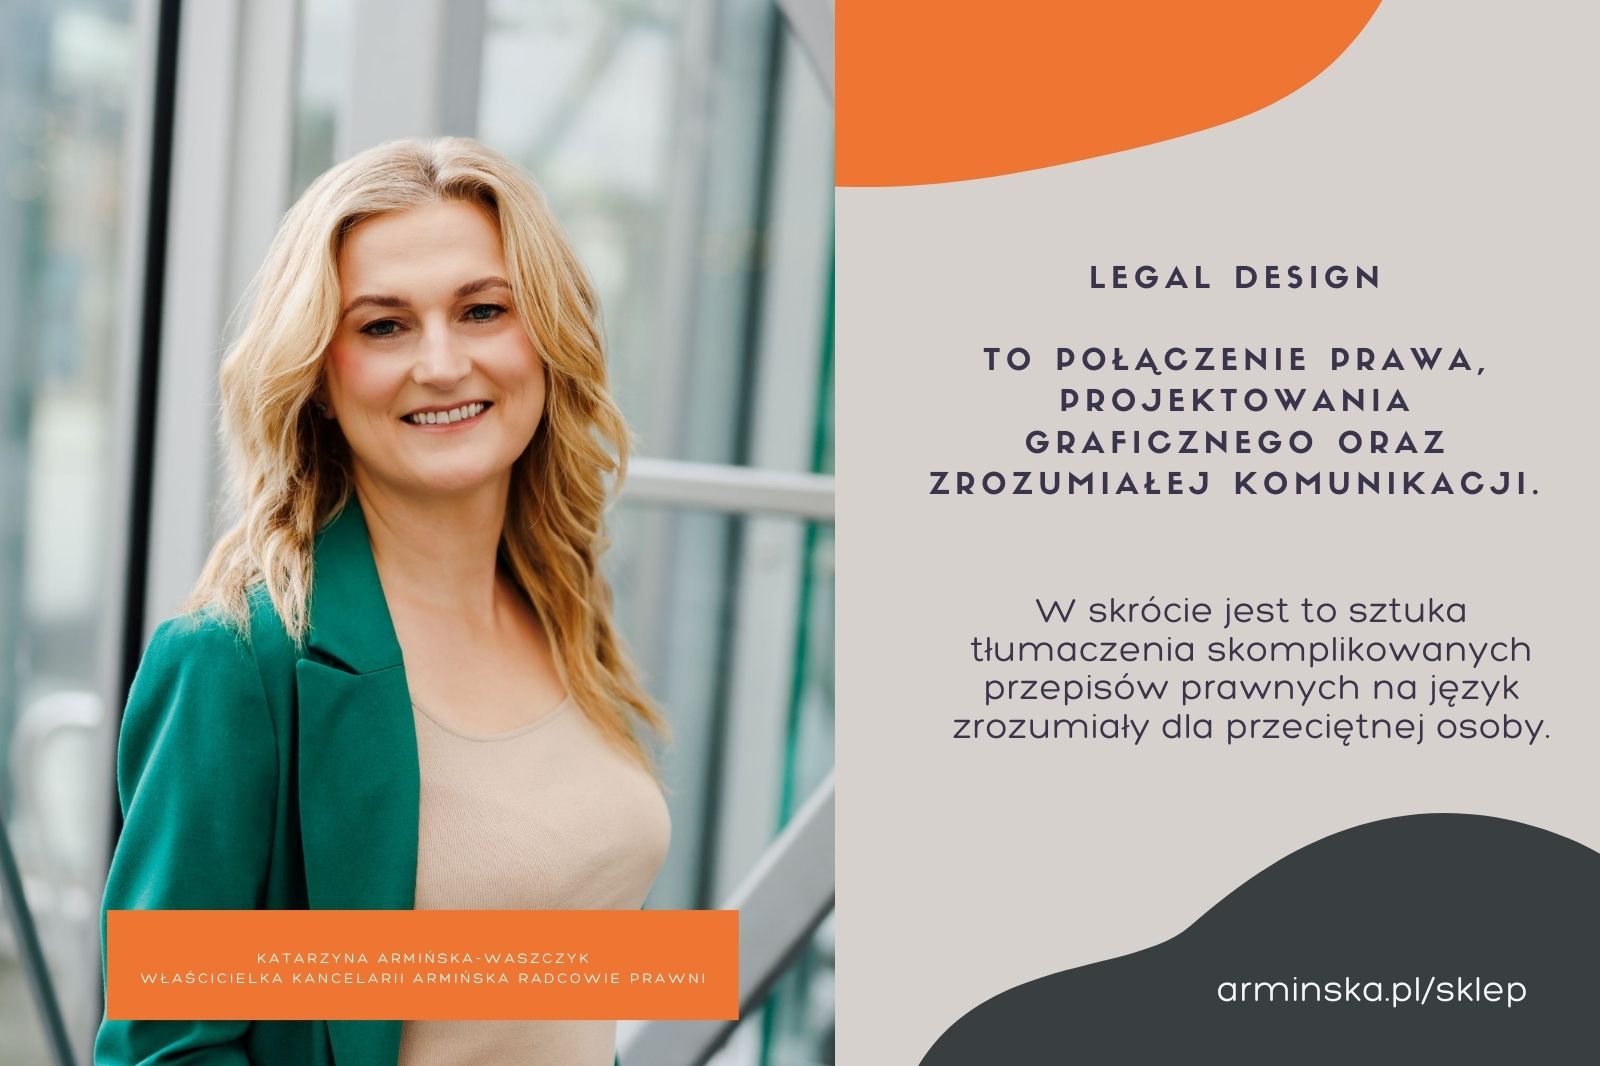 Katarzyna Armińska właścicielka kancelarii armińska radcowie prawni o Legal Design